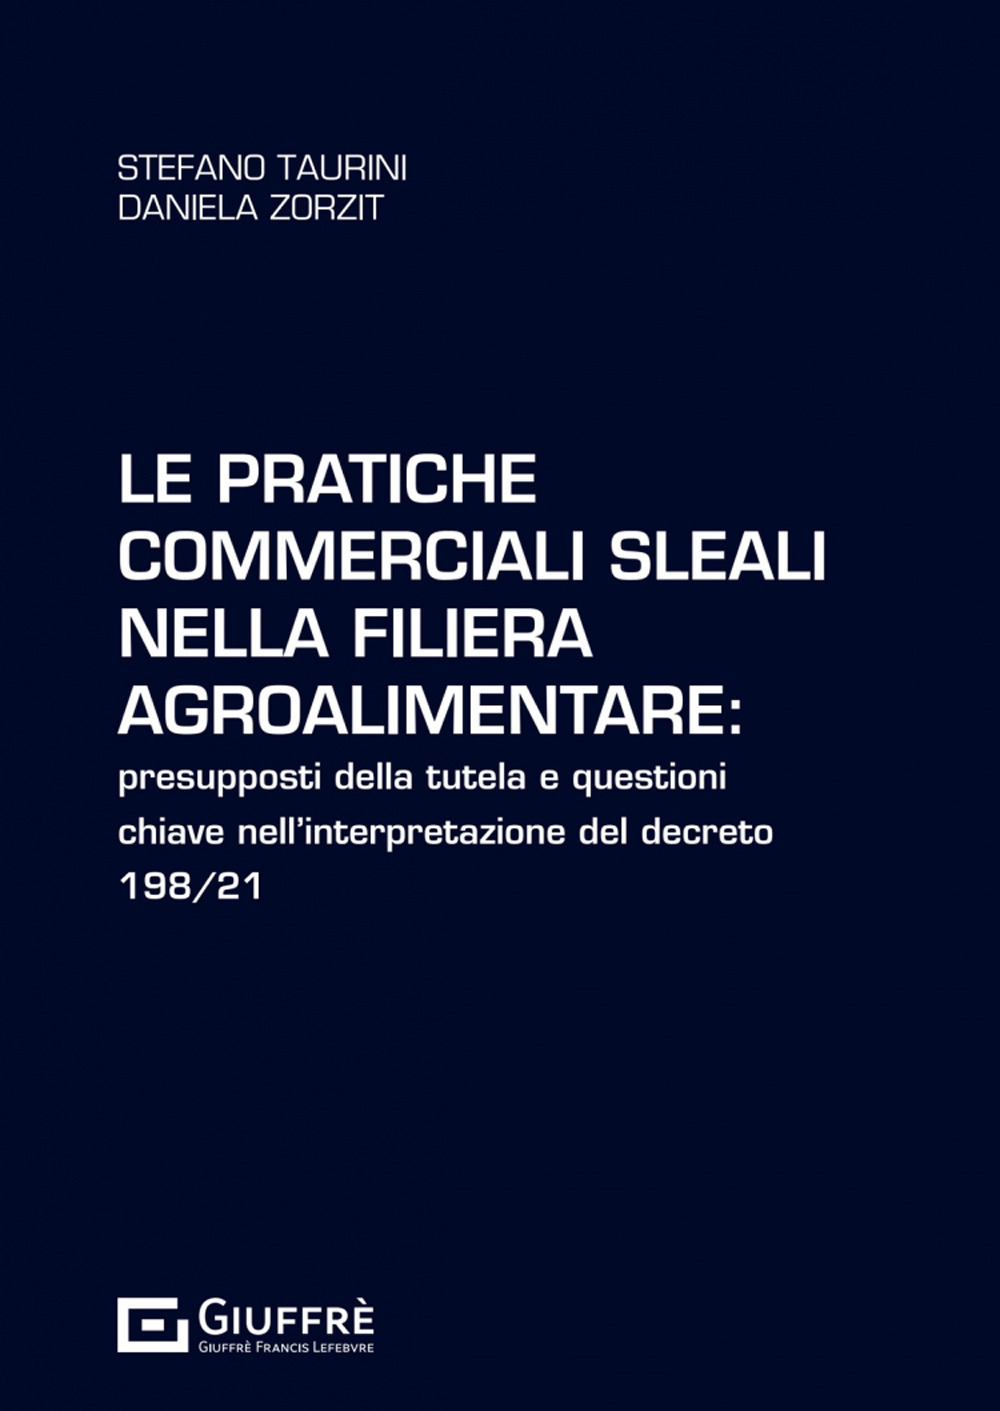 Le pratiche commerciali sleali nella filiera agroalimentare: presupposti della tutela e questioni chiave nell'interpretazione del decreto 198/21